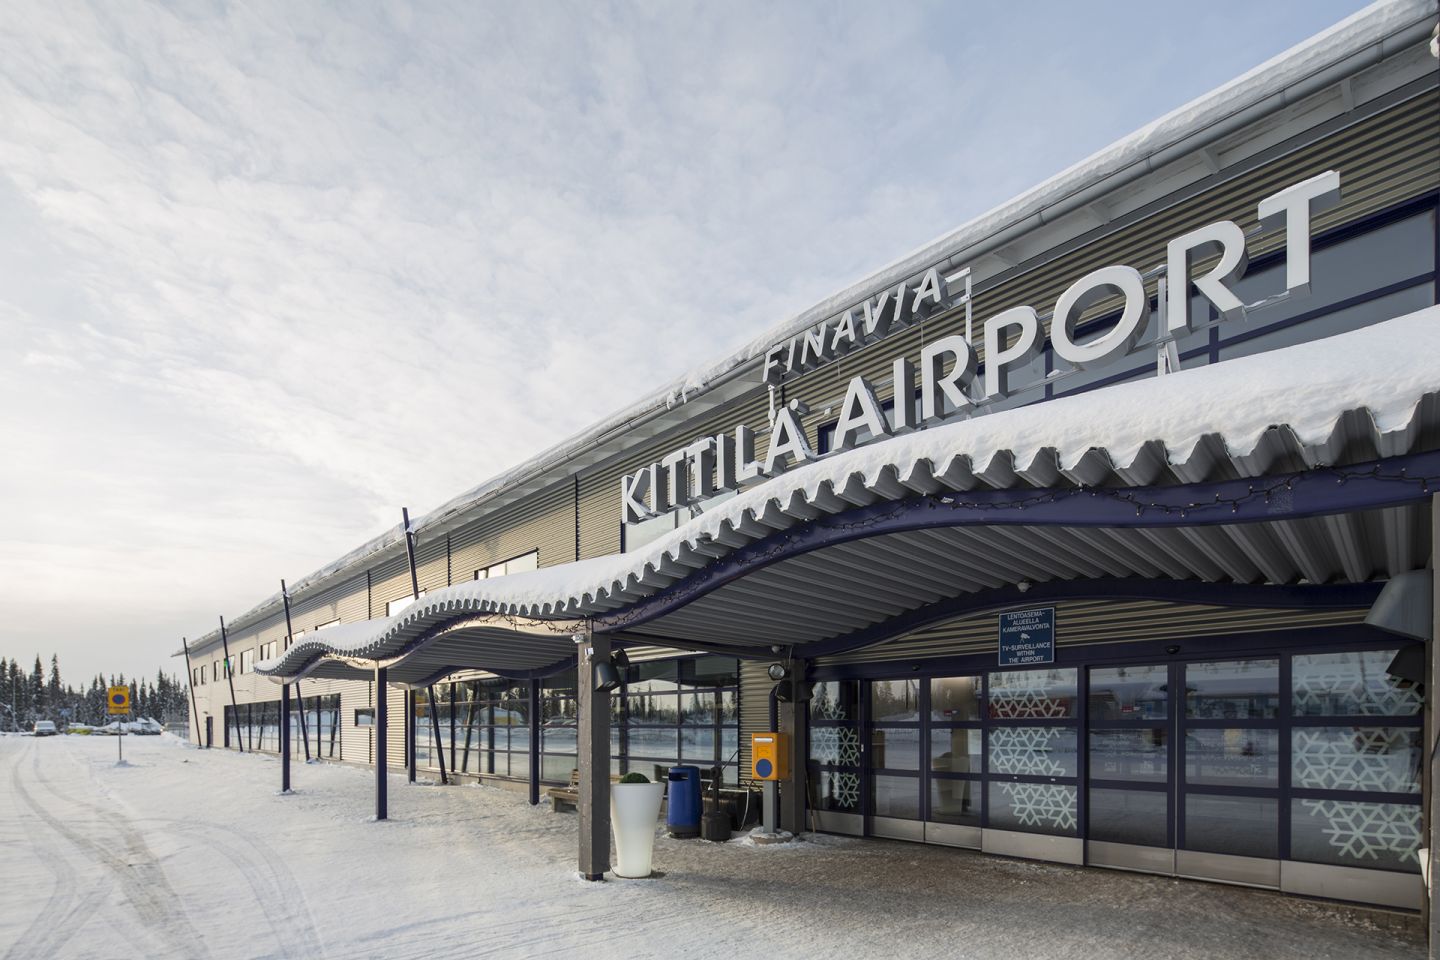 Kittilä Airport in Lapland, Finland